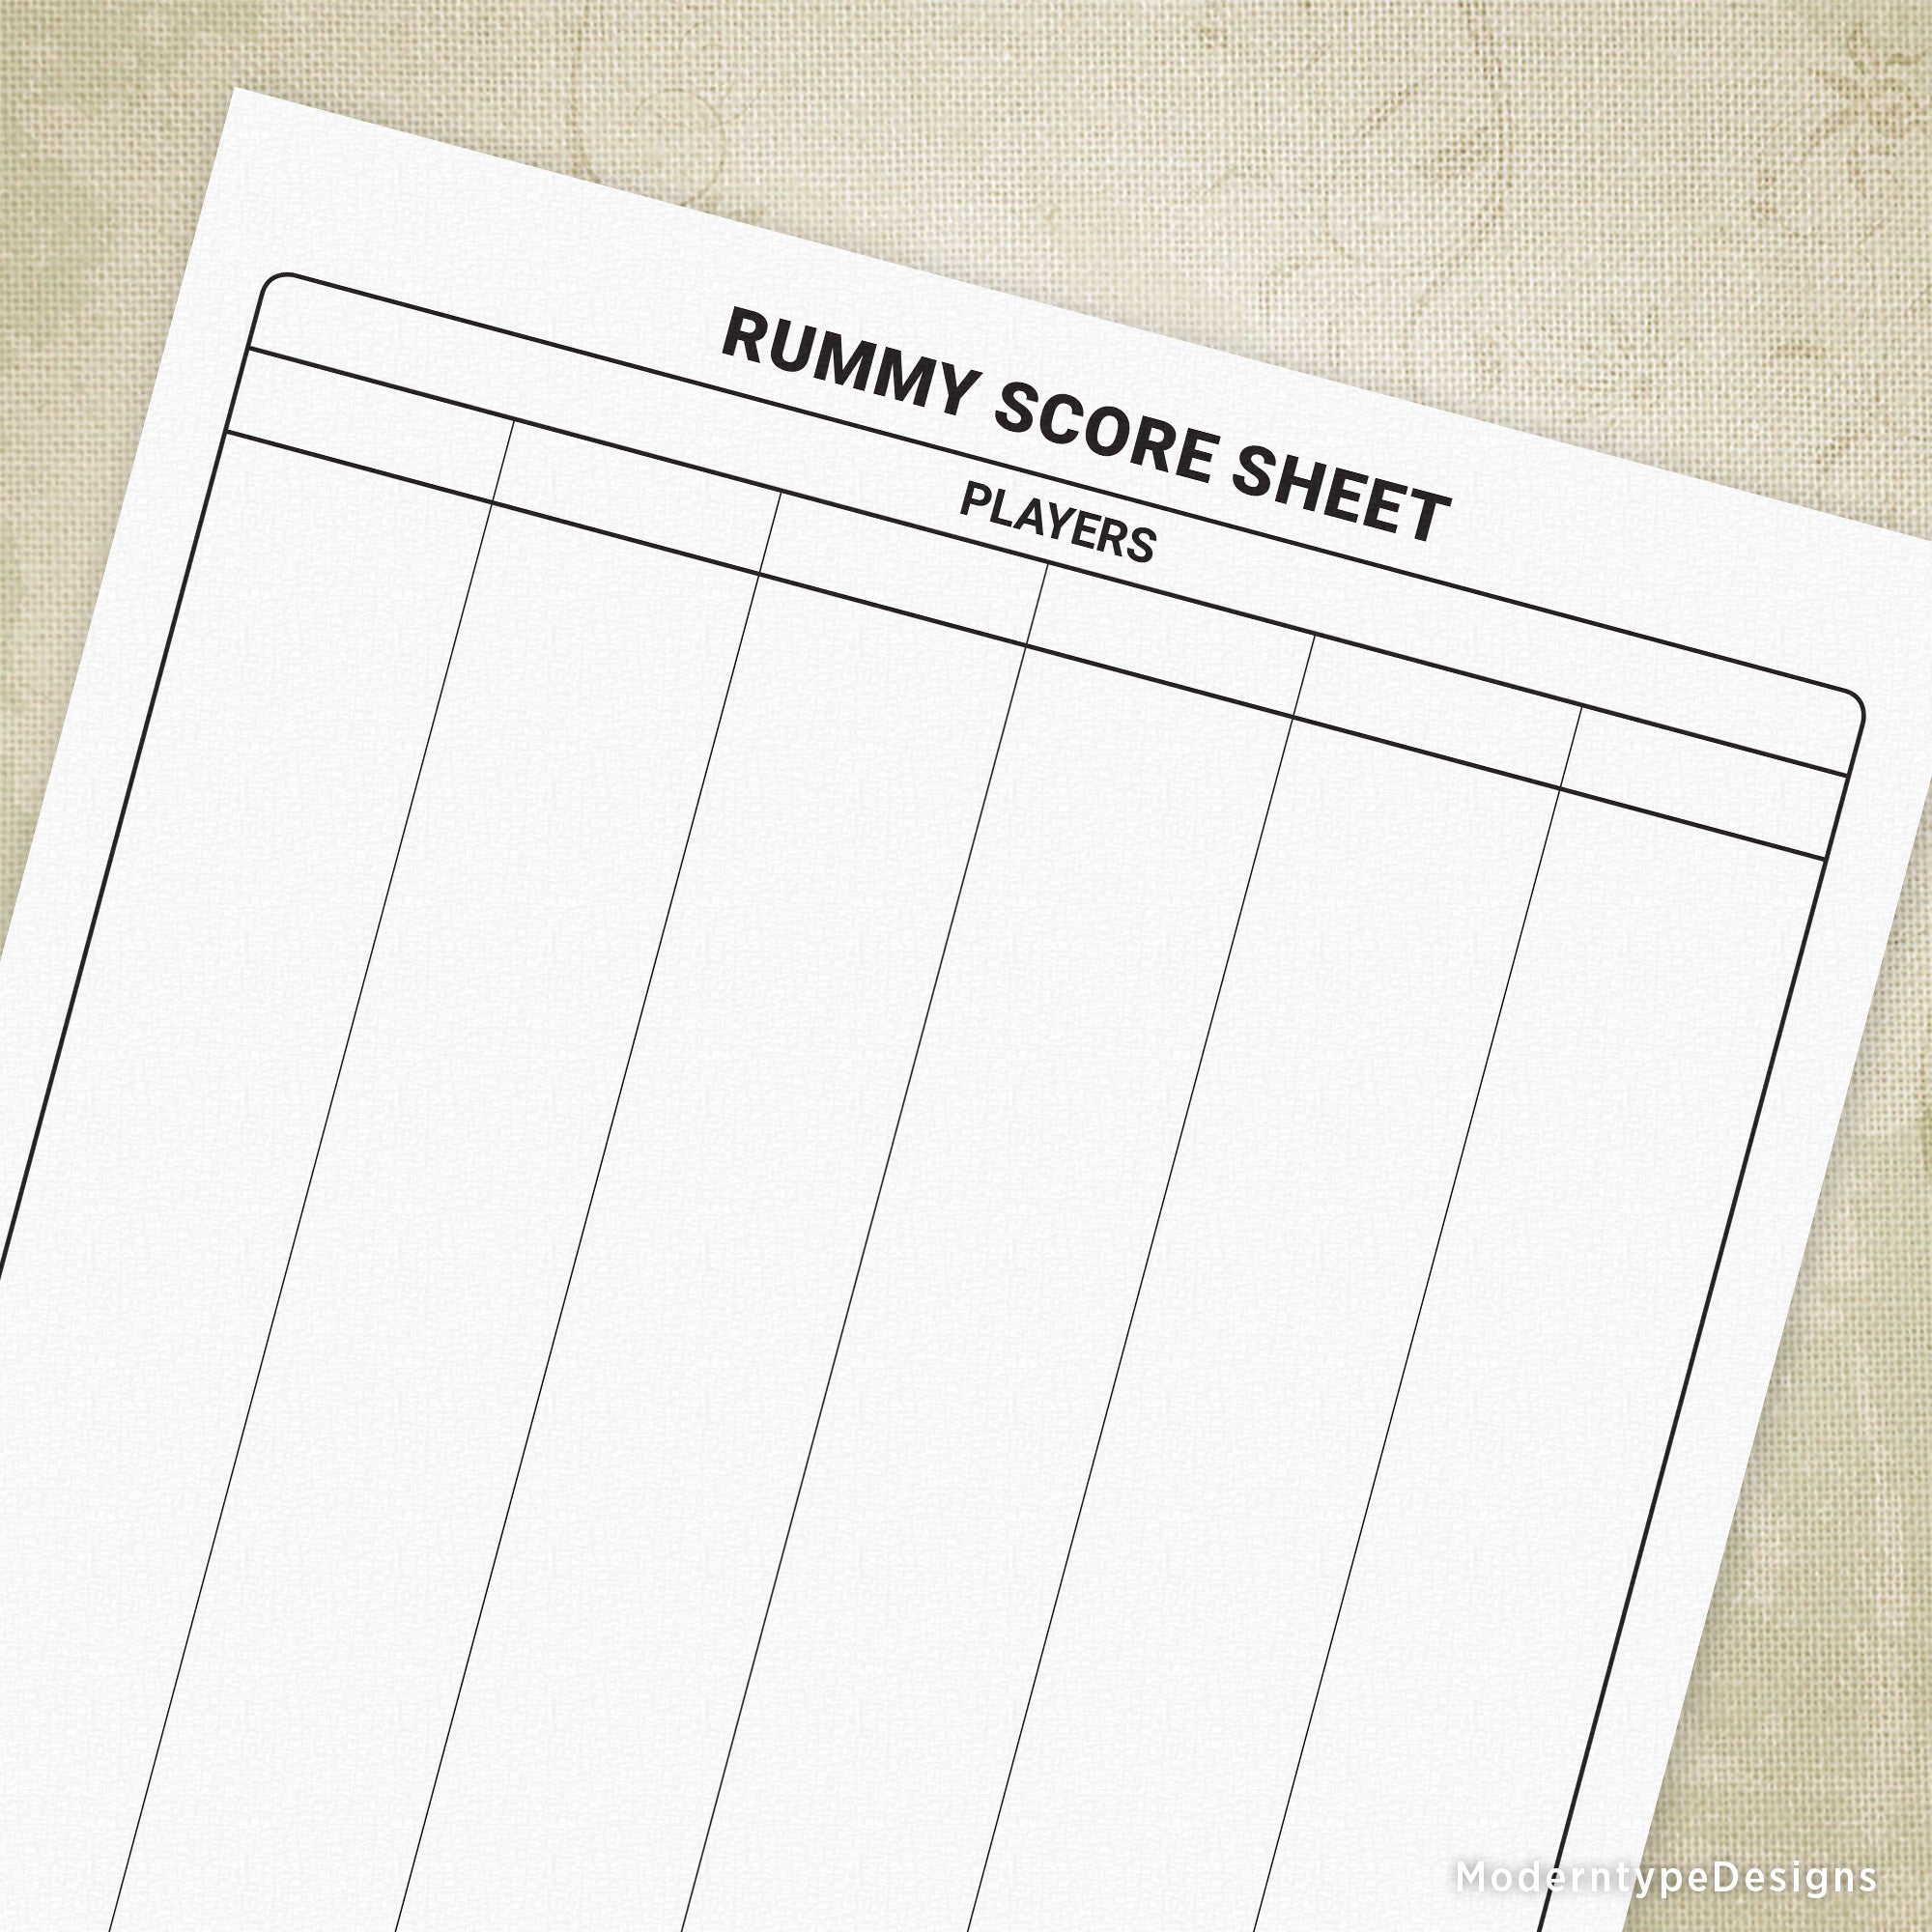 Rummy Scoring Sheet Printable Form